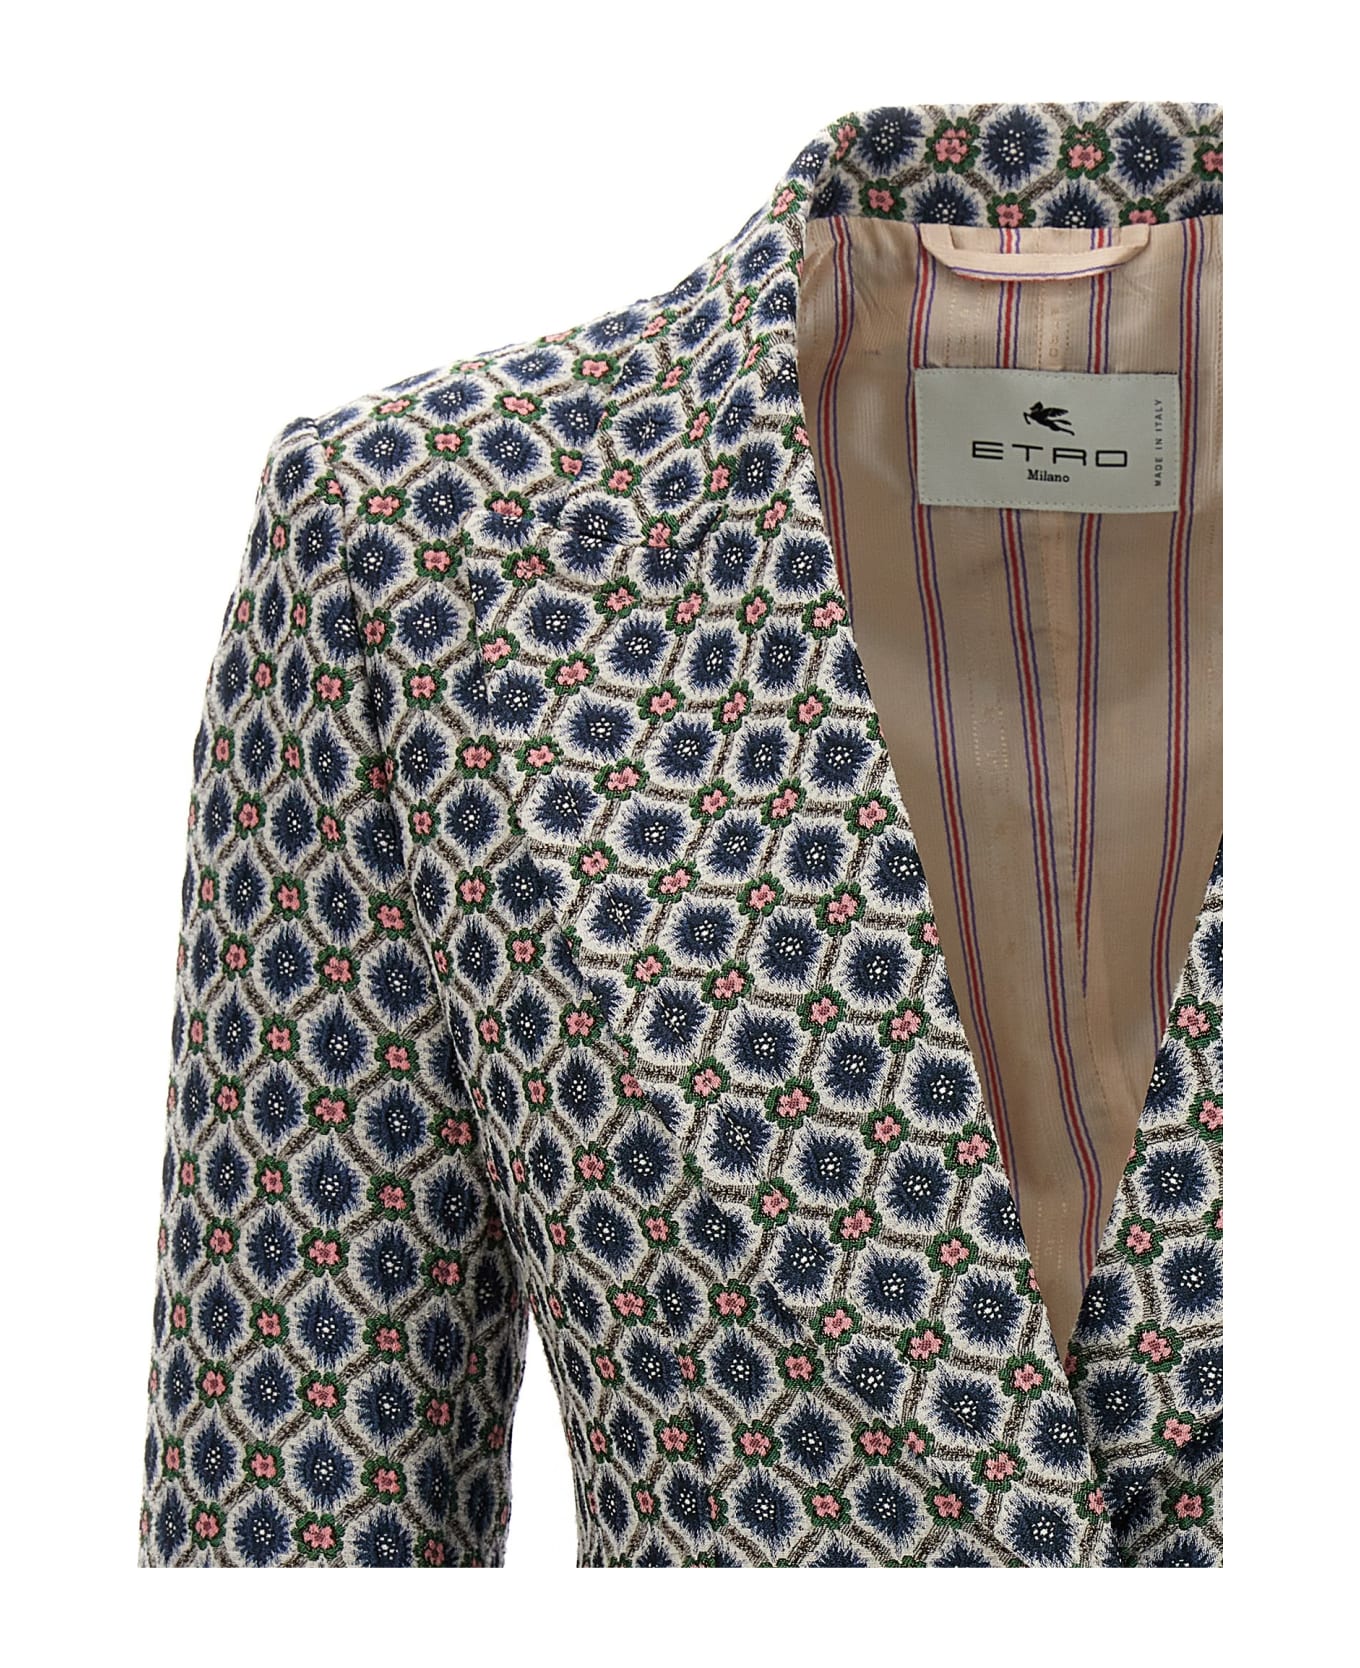 Etro Floral Jacquard Blazer Jacket - Multicolour